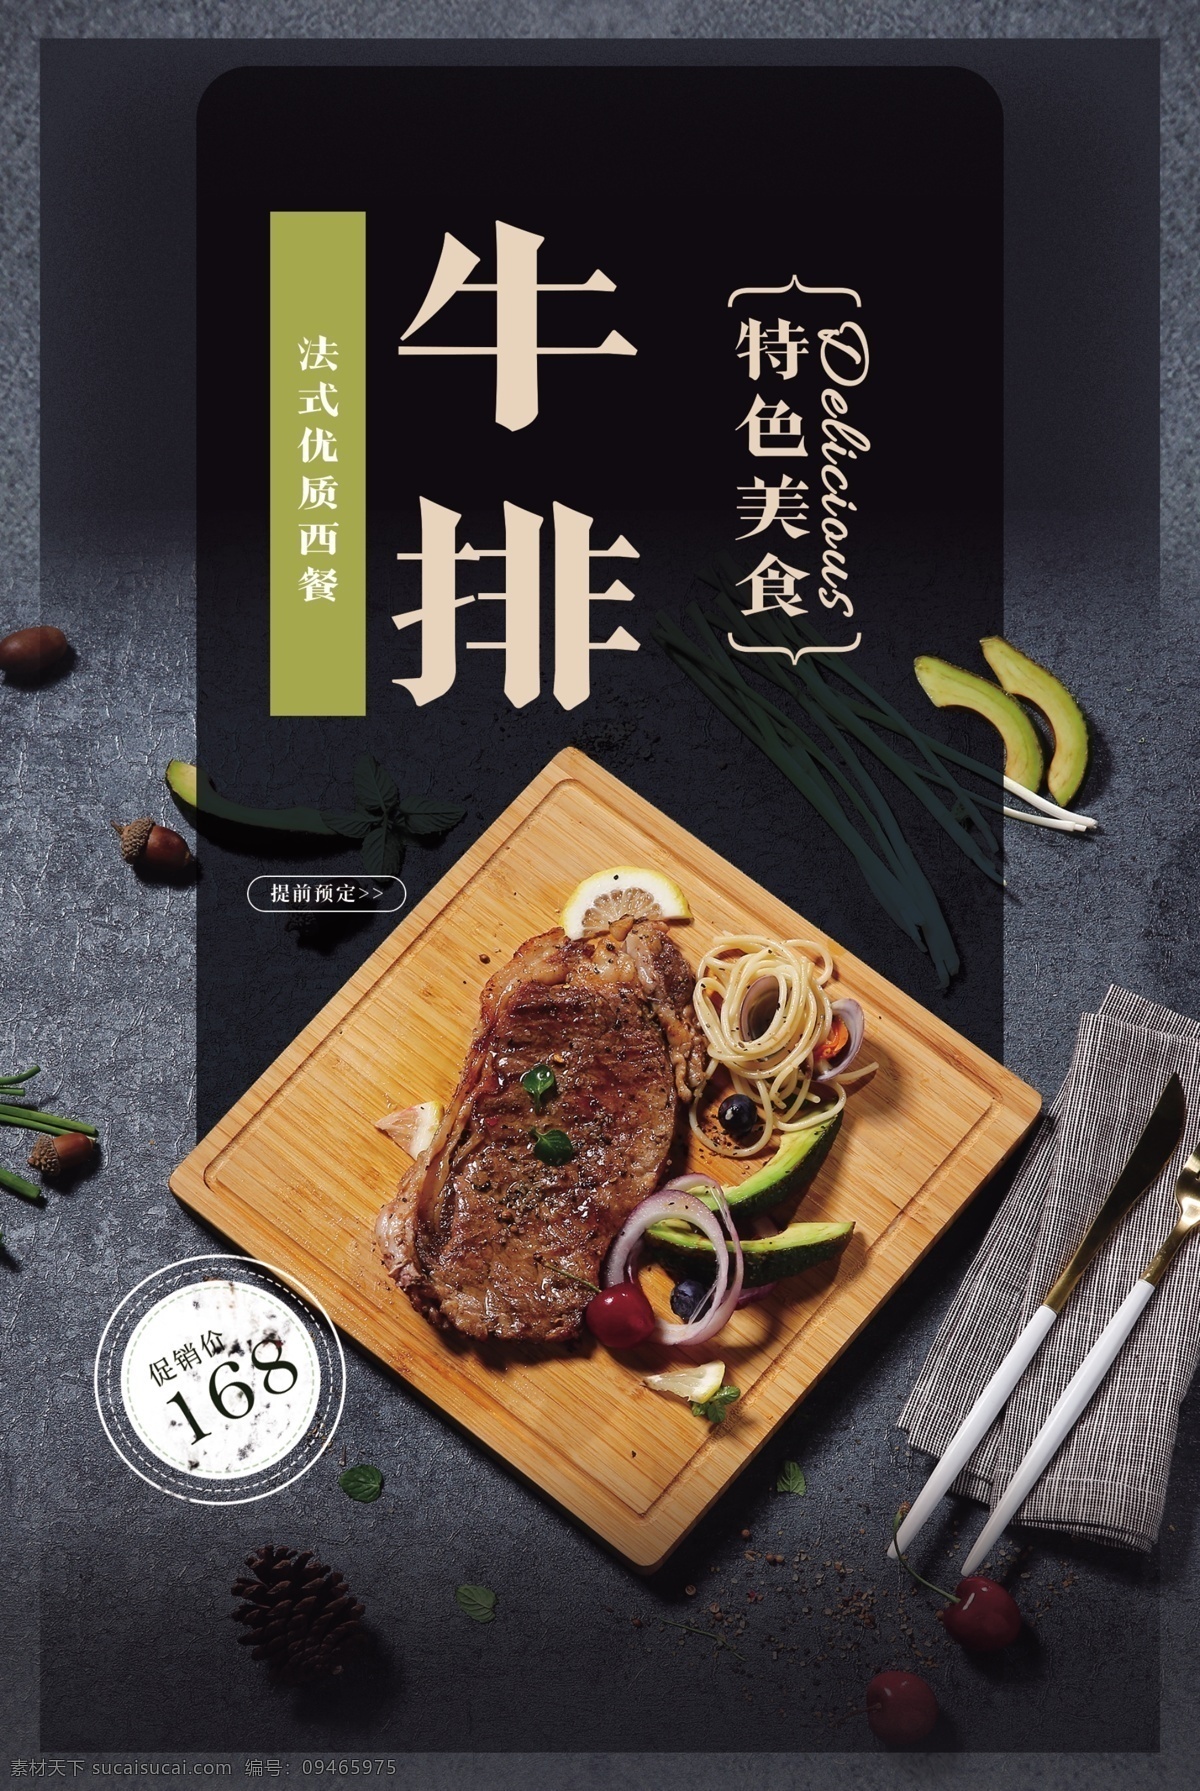 西餐 牛排 食 材 活动 宣传海报 素材图片 食材 宣传 海报 餐饮美食 类